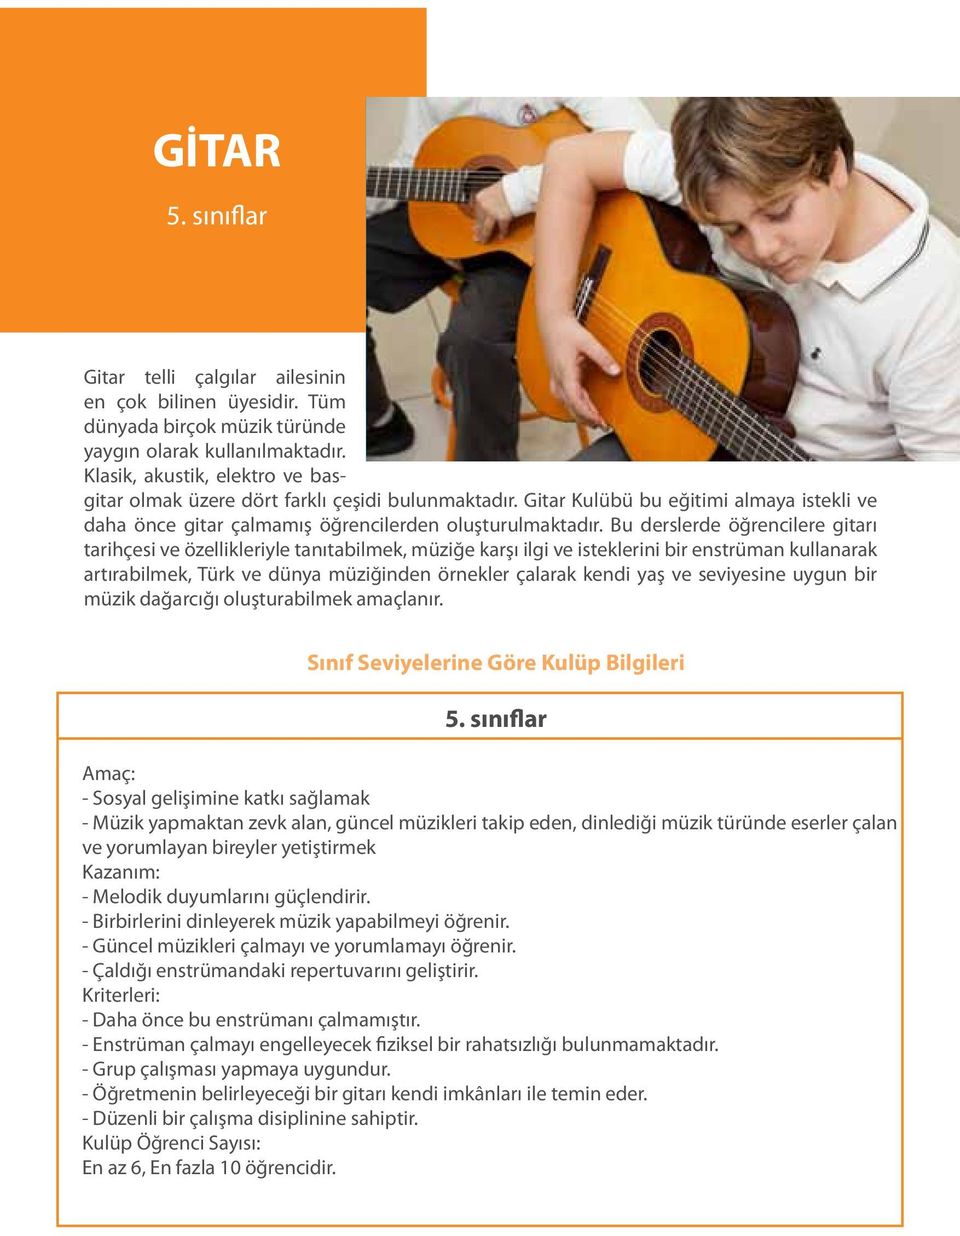 Bu derslerde öğrencilere gitarı tarihçesi ve özellikleriyle tanıtabilmek, müziğe karşı ilgi ve isteklerini bir enstrüman kullanarak artırabilmek, Türk ve dünya müziğinden örnekler çalarak kendi yaş